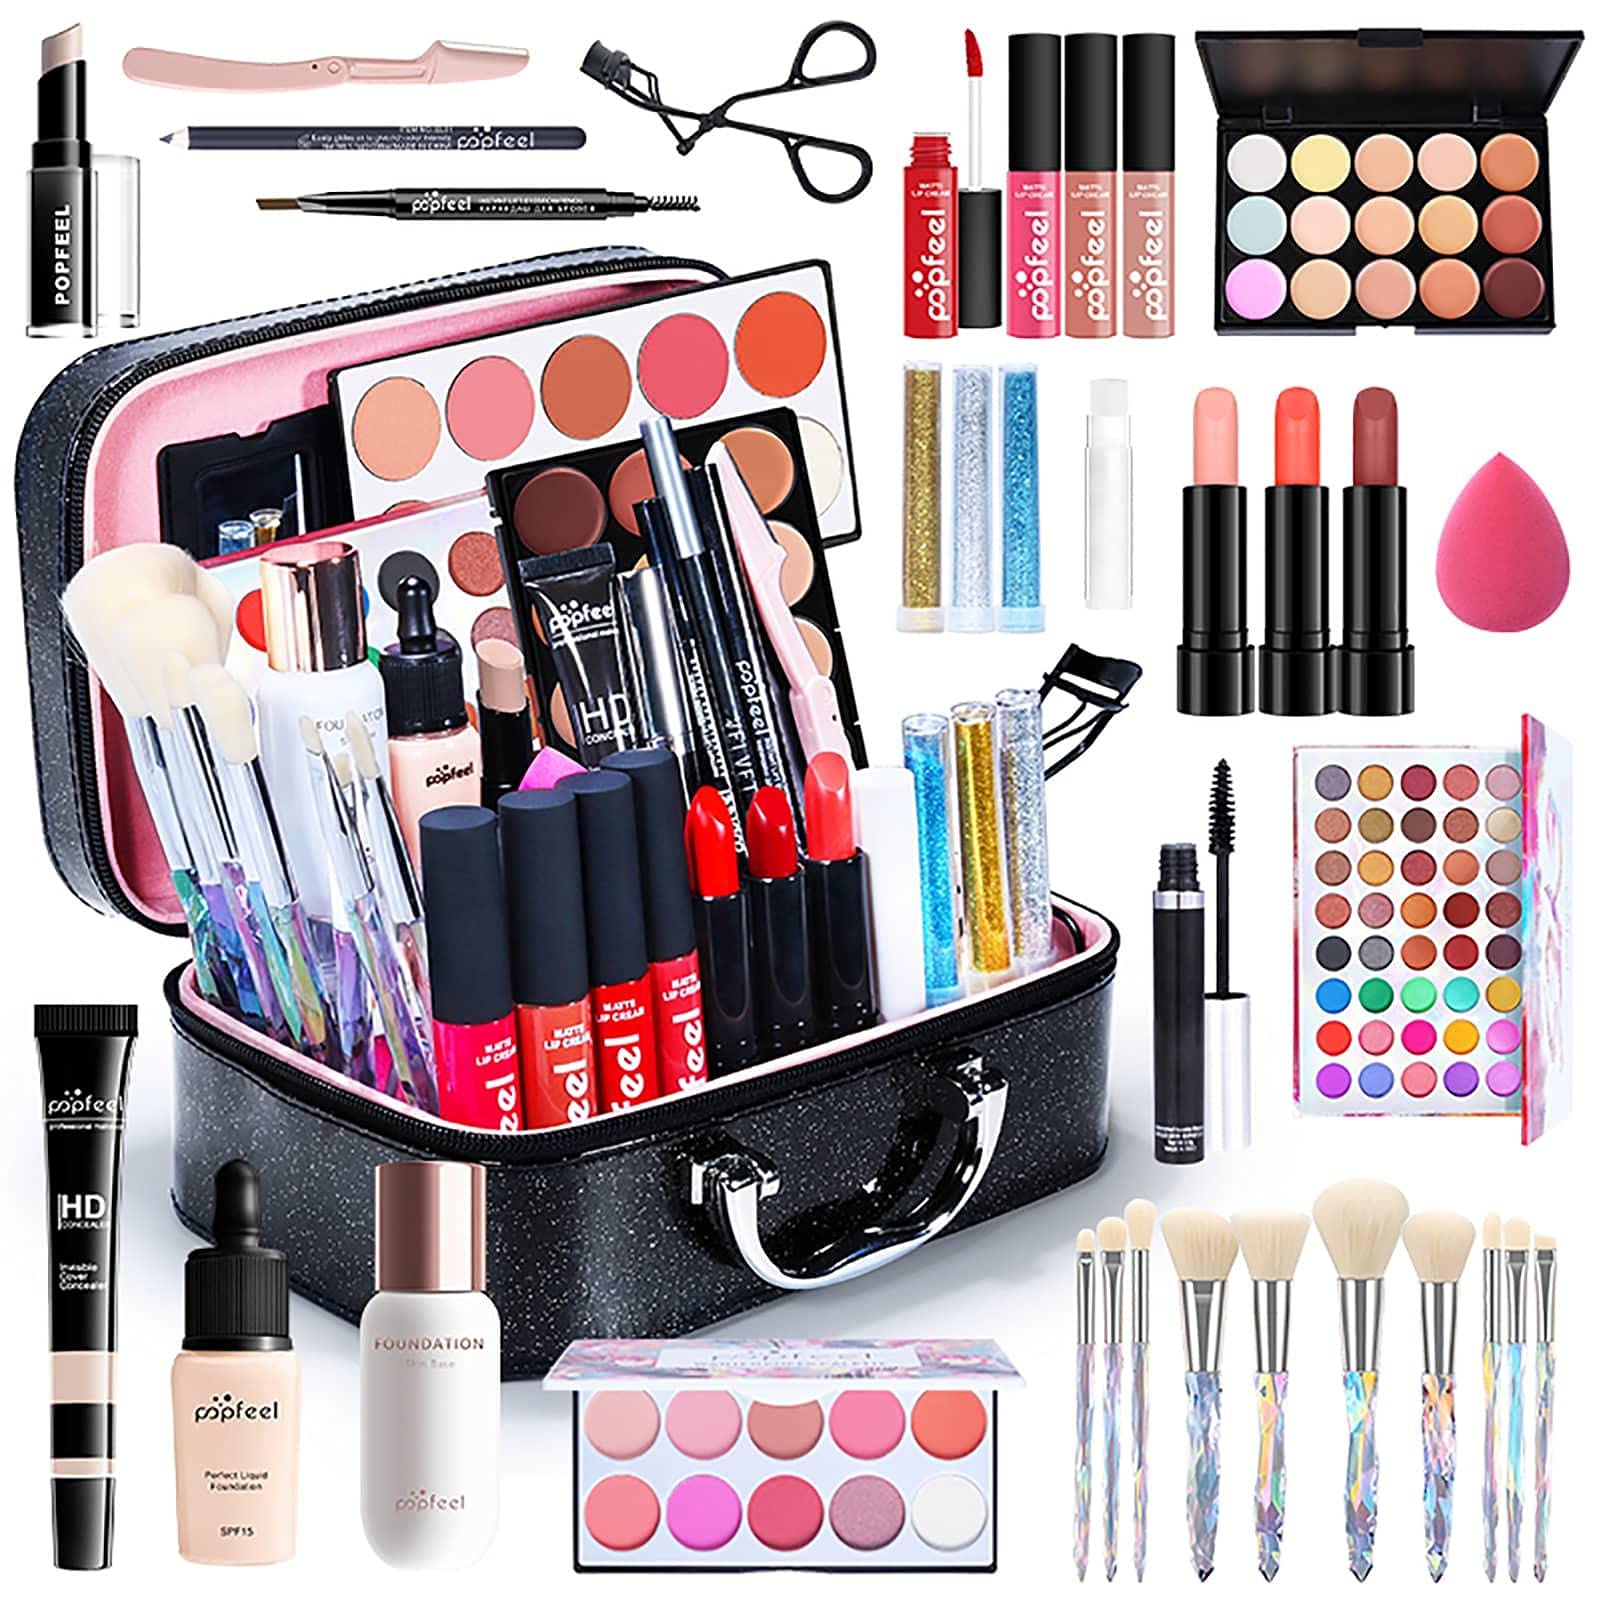 duhe189014 35-teiliges Make-up-Set für die Reise, All-in-Make-up-Set für Frauen, Mädchen, komplettes Make-up-Paket mit Make-up-Pinseln, Lippenstiften, Lidschatten und ehr